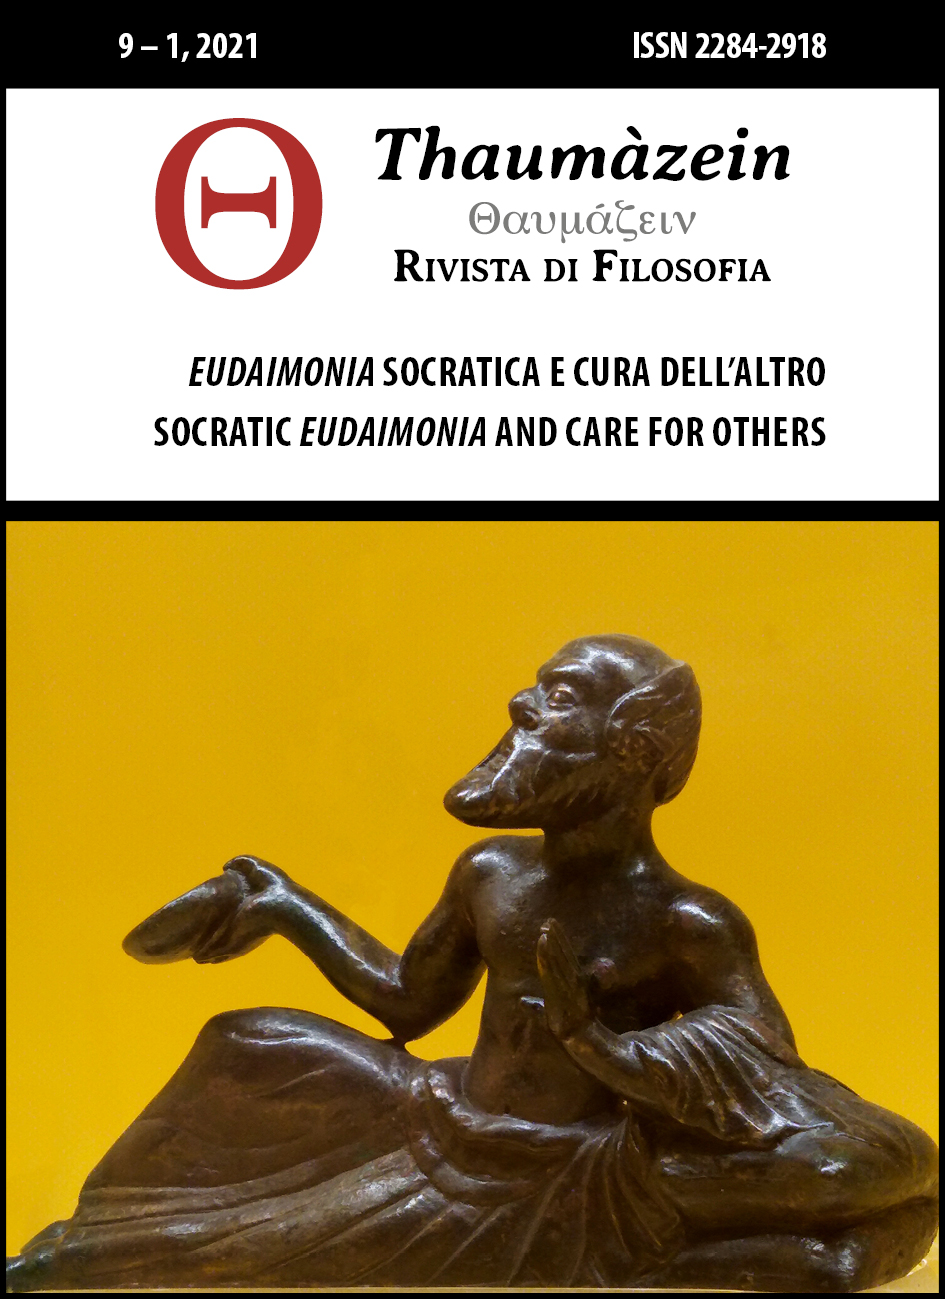 					View Vol. 9 No. 1 (2021): Eudaimonia socratica e cura dell’altro | Socratic Eudaimonia and Care for Others
				